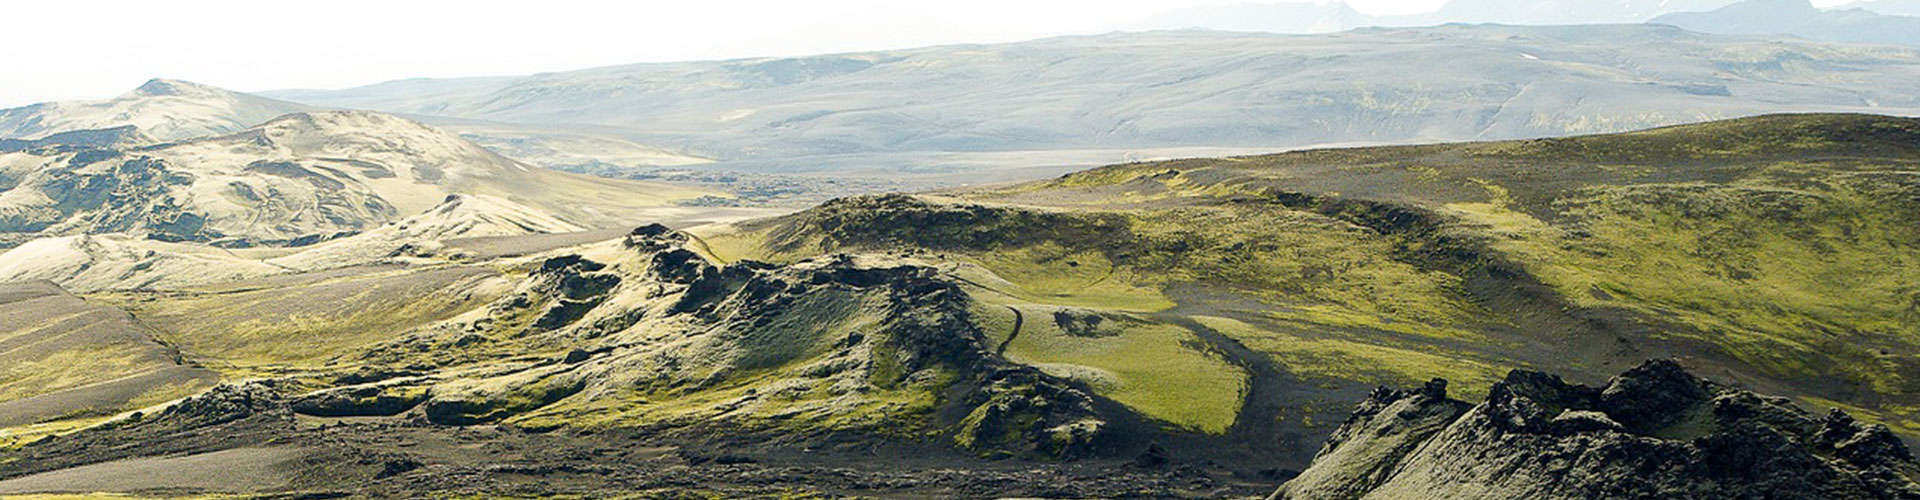 Trek de Viknasloðir